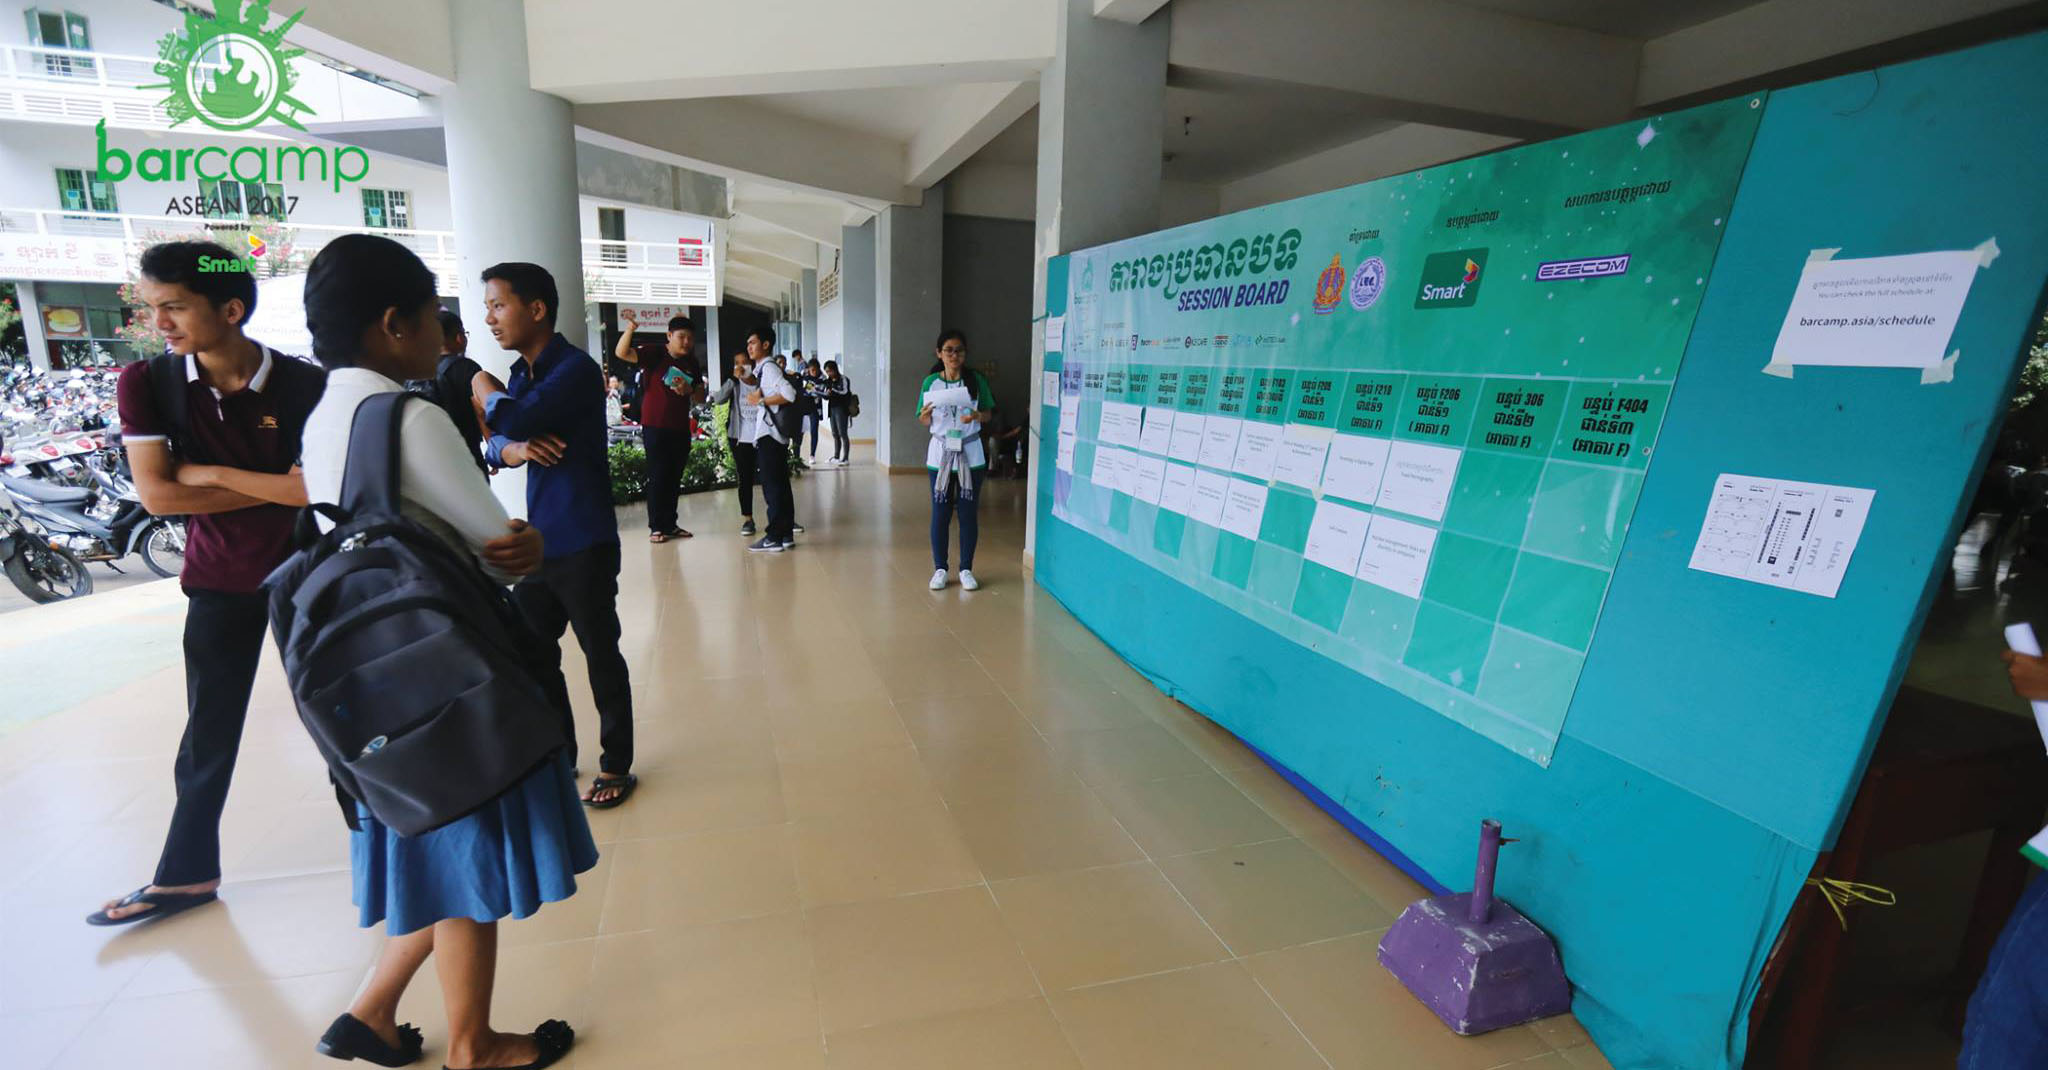 តារាង​បង្ហាញ​ពី​ប្រធានបទ​នៃ​ព្រឹត្តិការណ៍​បារខែម​អាស៊ាន ឬ​ហៅ​ថា​សិក្ខាសាលា​បច្ចេកវិទ្យា និង​ការ​ចាប់​ផ្ដើម​ជំនួញ (BarCamp ASEAN 2017 Tech & Startup Conference) នា​សាលា​តិចណូ នៅ​ថ្ងៃ​ទី​២១ ខែ​តុលា ឆ្នាំ​២០១៧។ Credit: BarCamp Phnom Penh